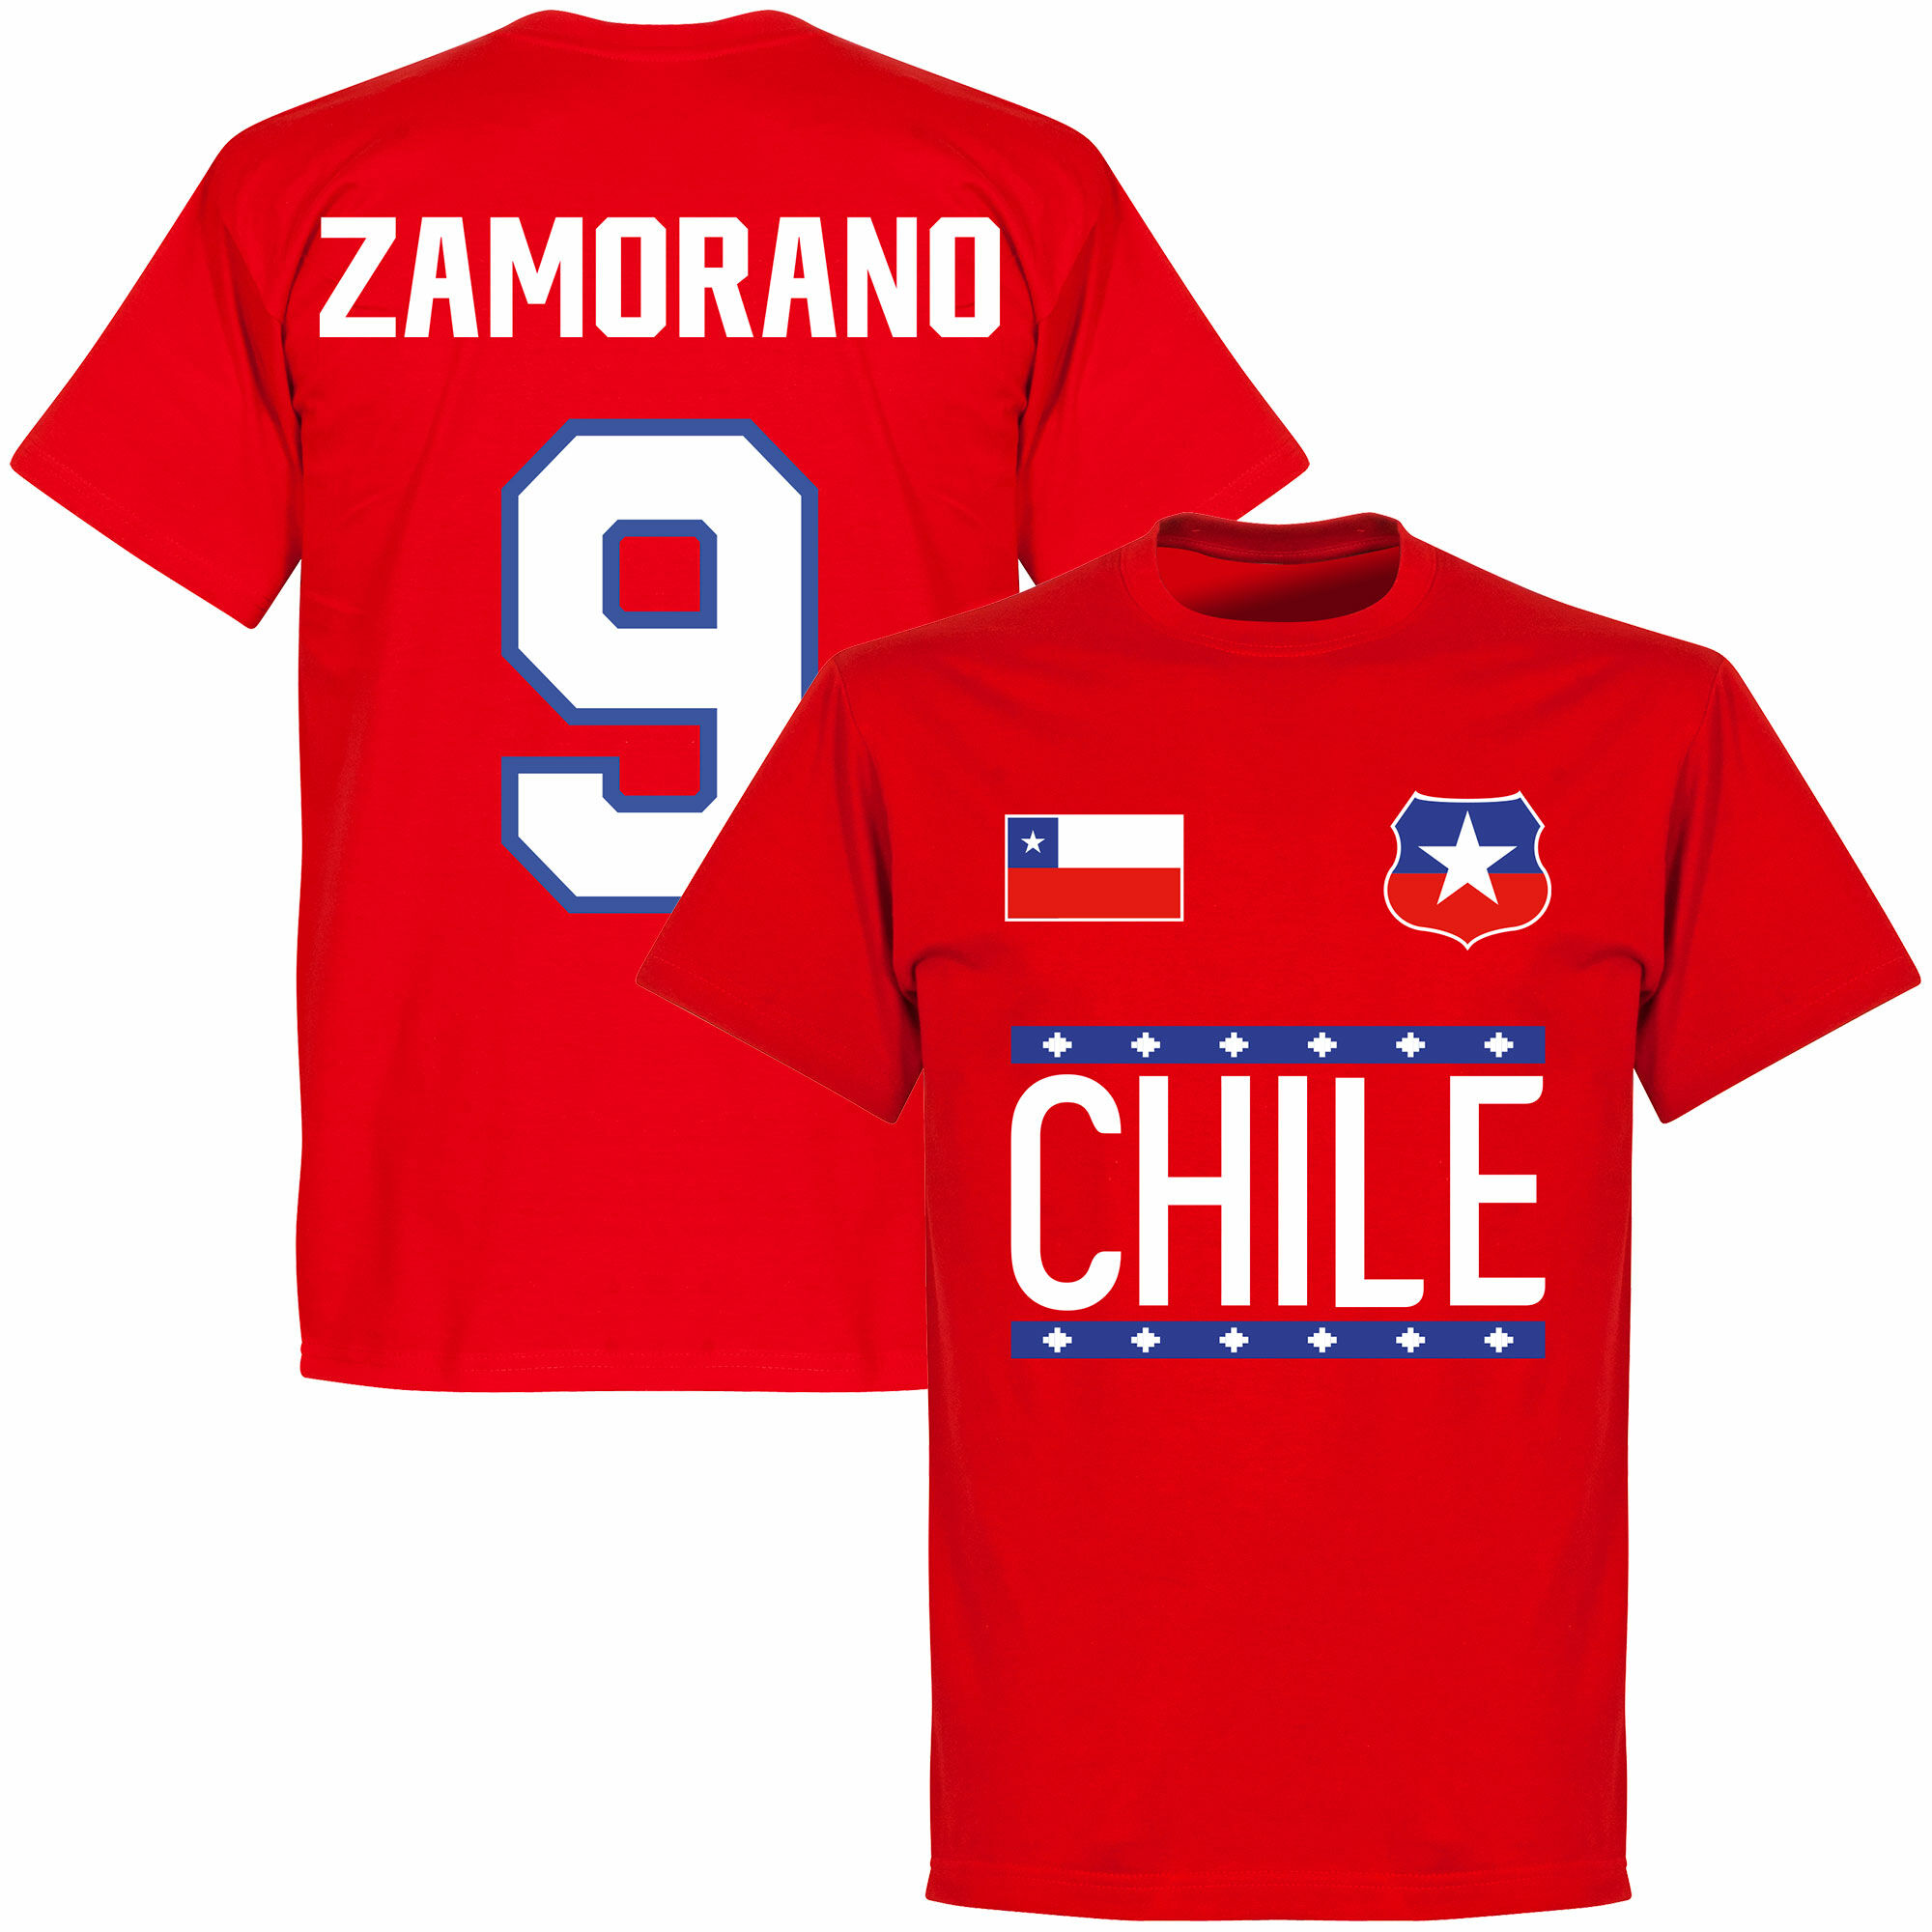 Chile - Tričko - červené, Iván Zamorano, číslo 9